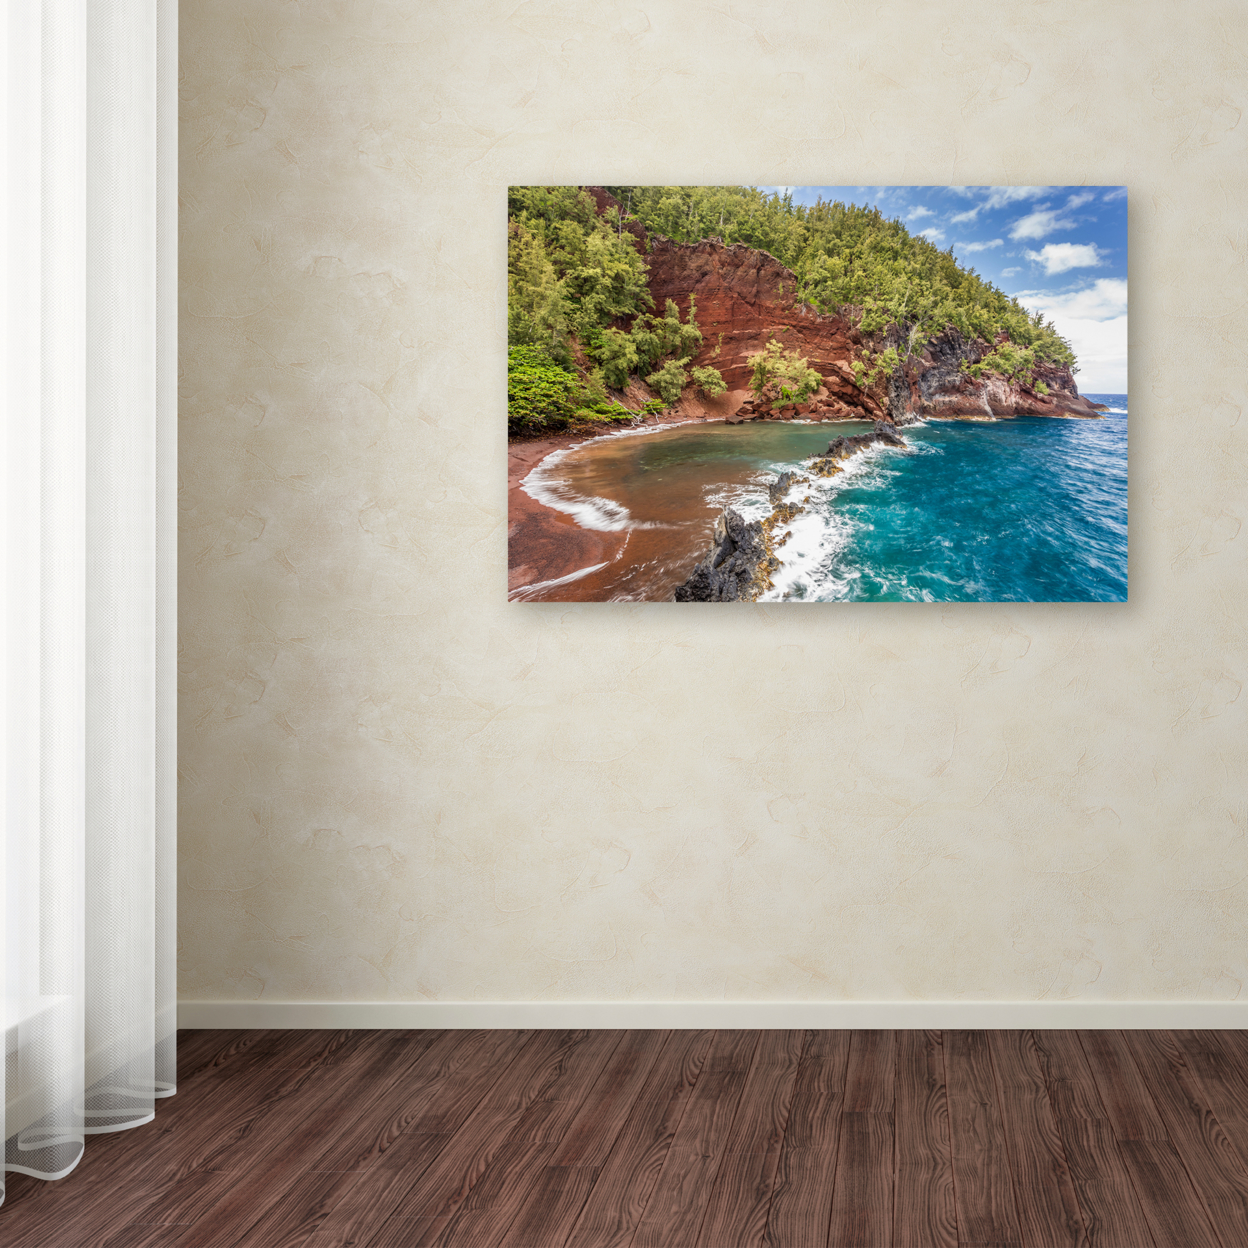 Pierre Leclerc 'Red Sand Beach Maui' Canvas Art 16 X 24